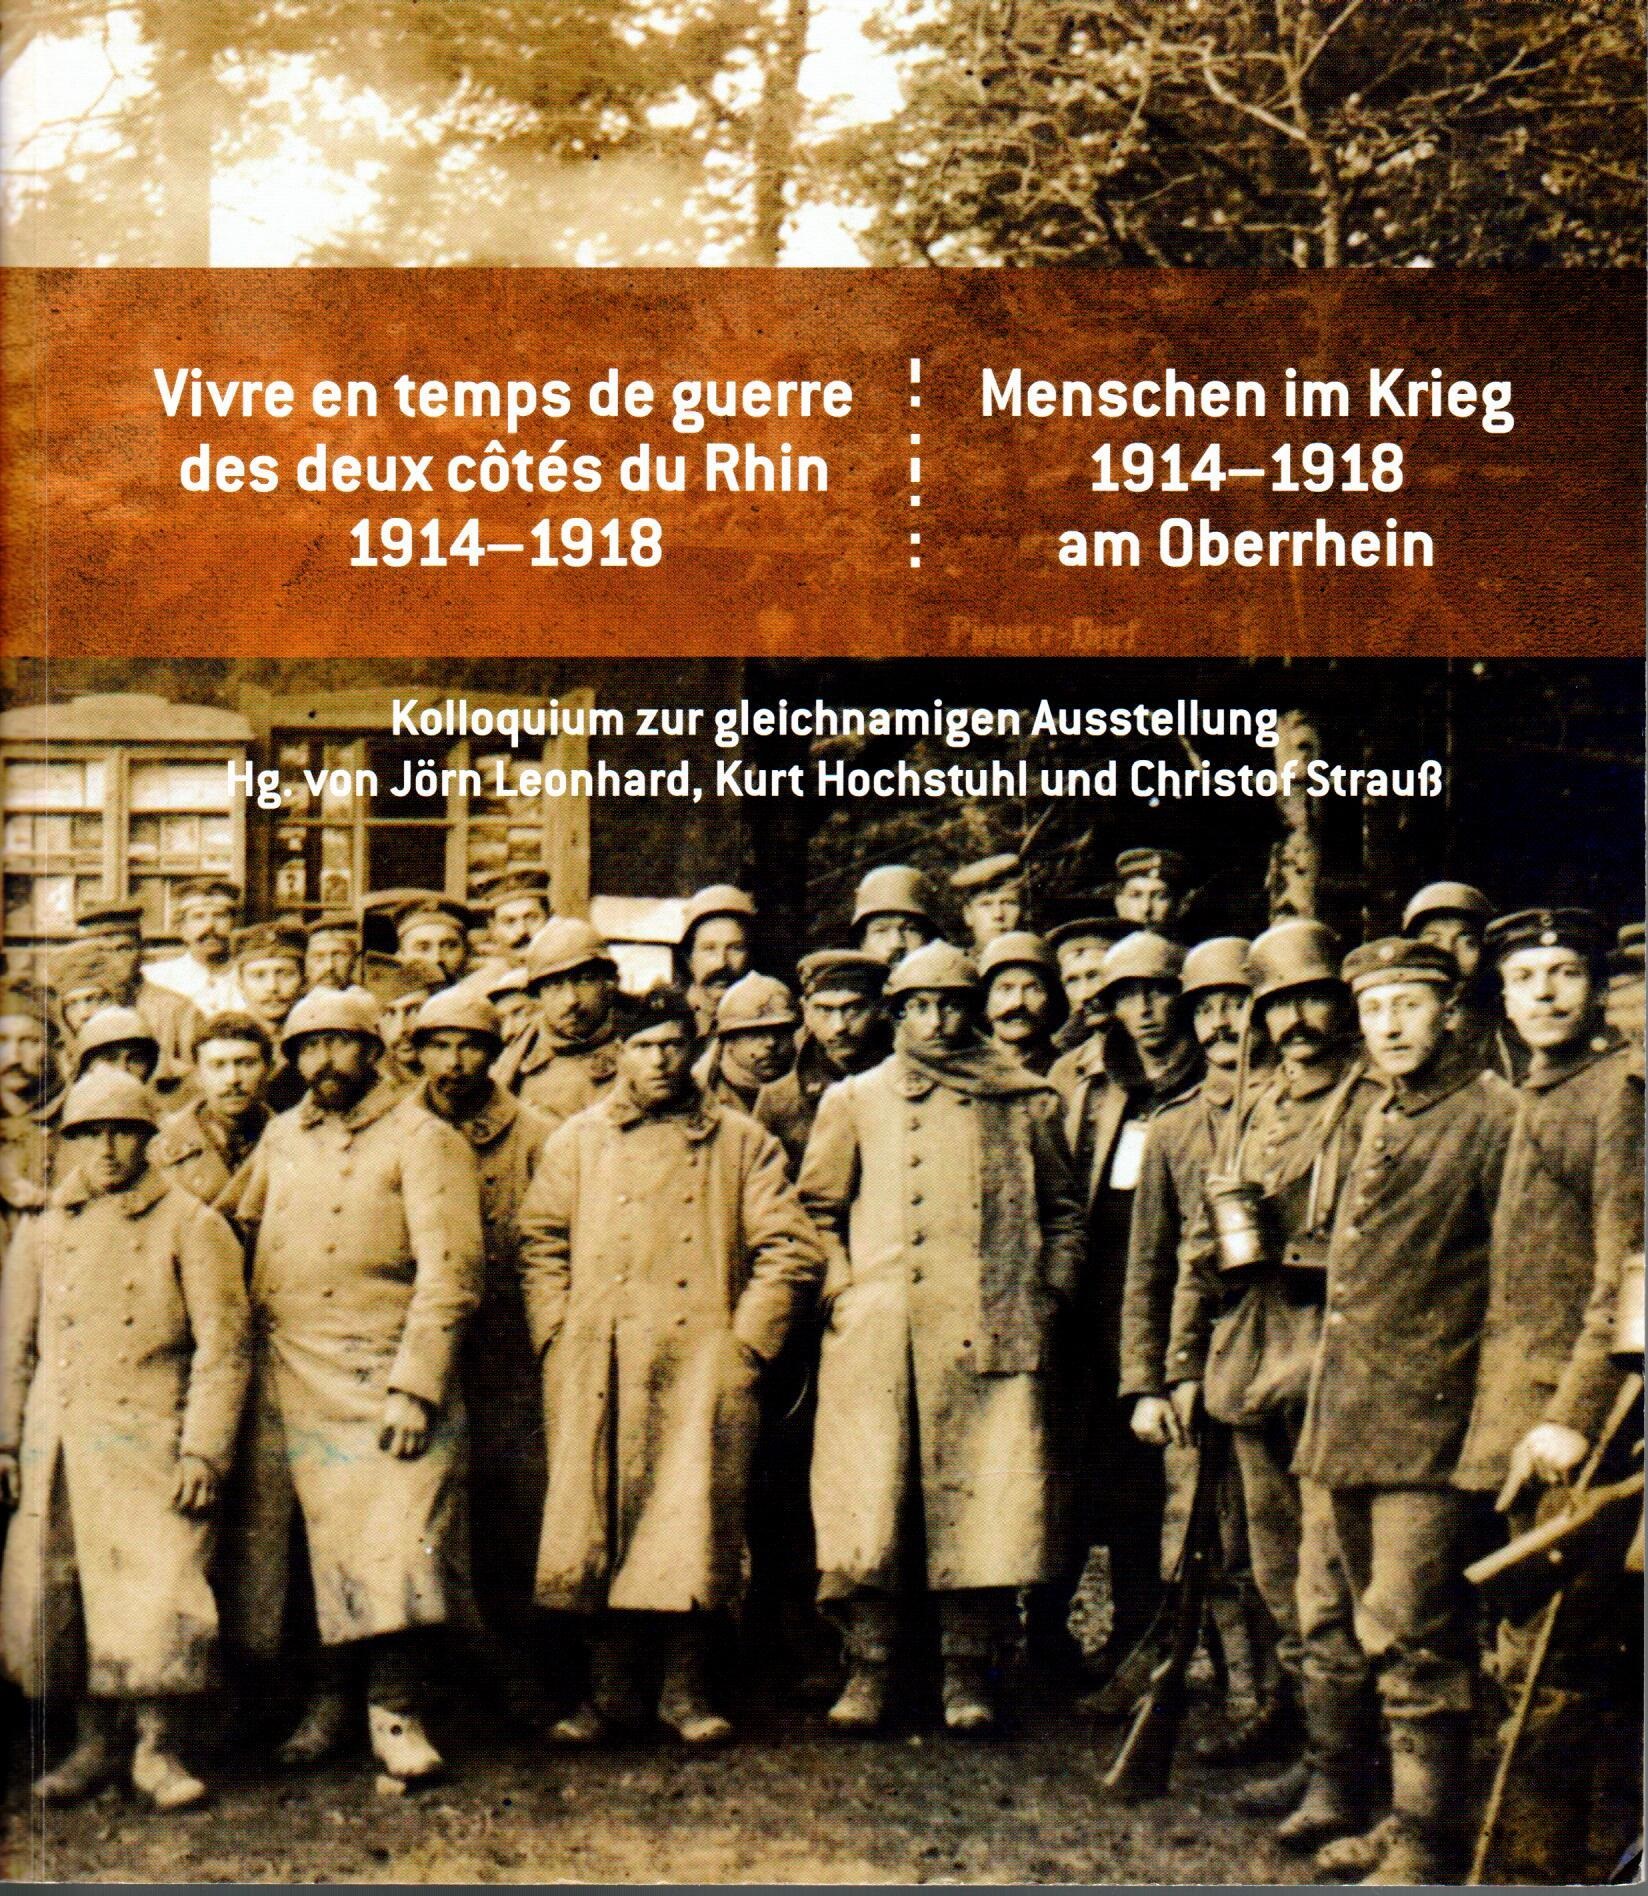 Menschen im Krieg 1914-1918 am Oberrhein (2014).jpg